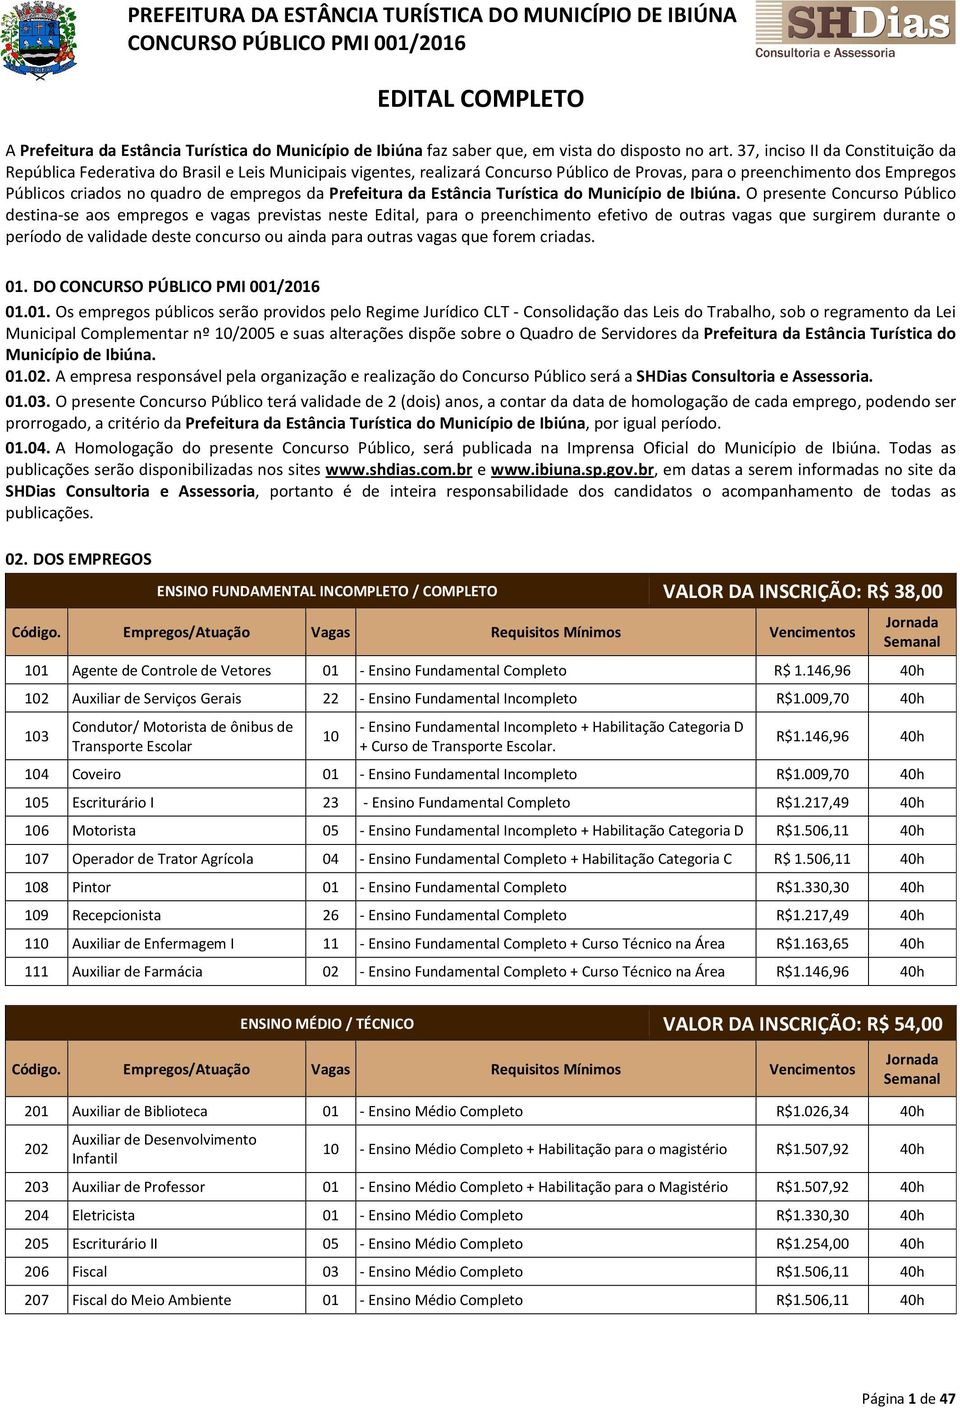 empregos da Prefeitura da Estância Turística do Município de Ibiúna.